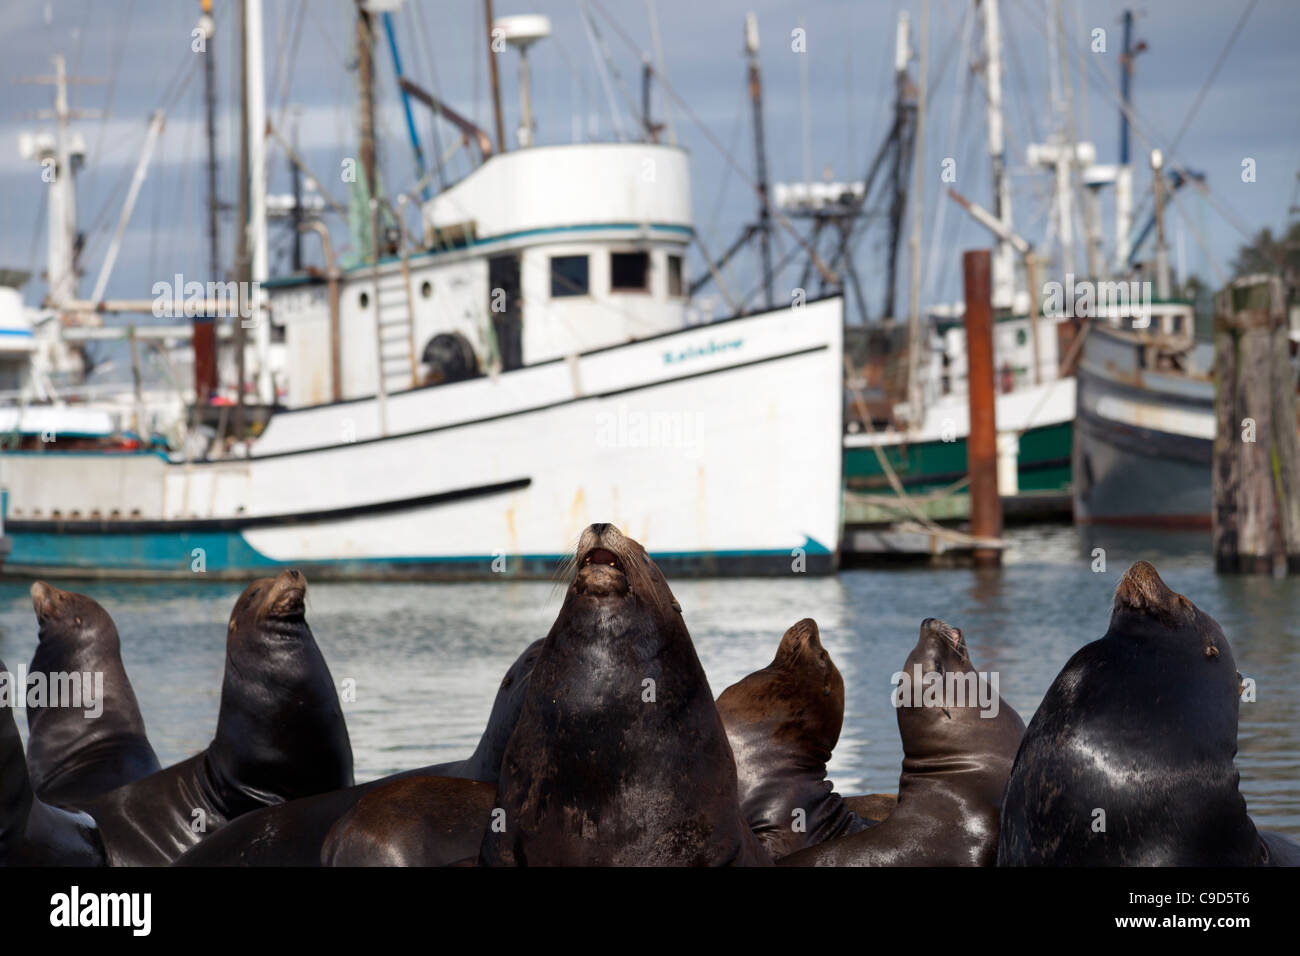 Stati Uniti d'America, Oregon, Charleston, California i leoni di mare (Zalophus californianus) sulla riva, barche da pesca in background Foto Stock